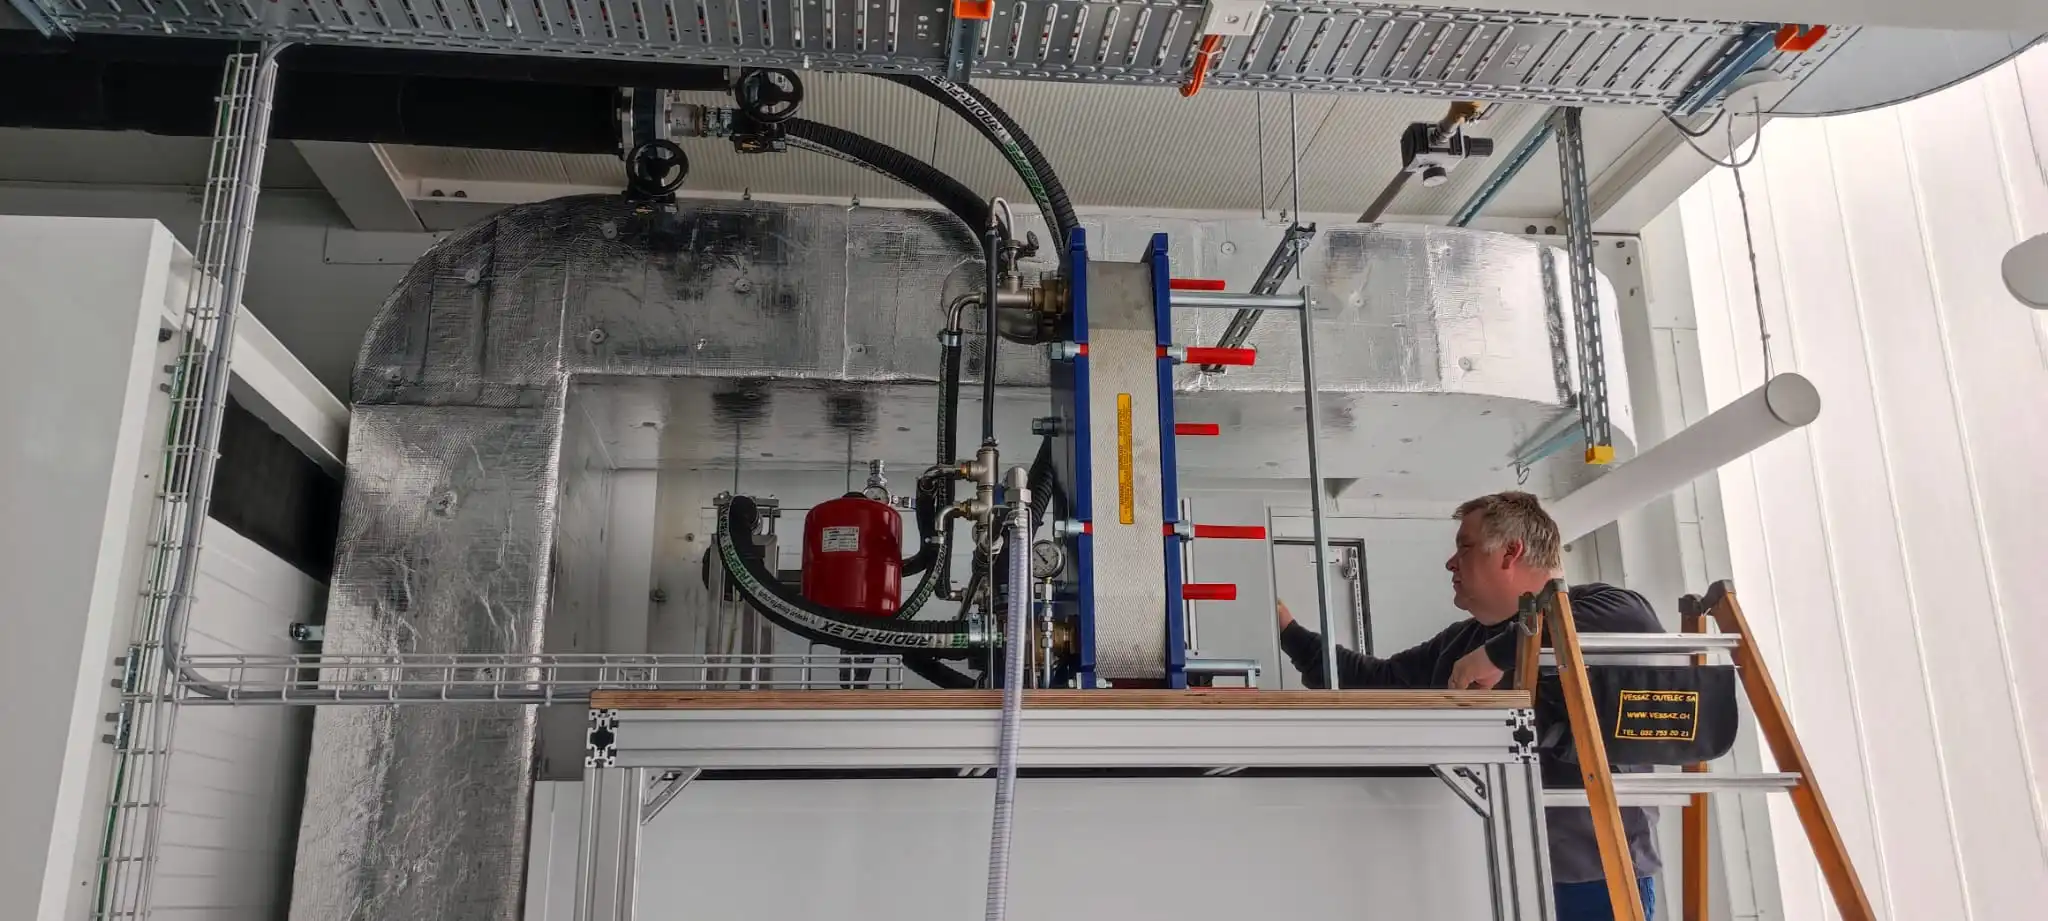 Technicien effectuant la maintenance d'un système de ventilation complexe dans un milieu industriel.